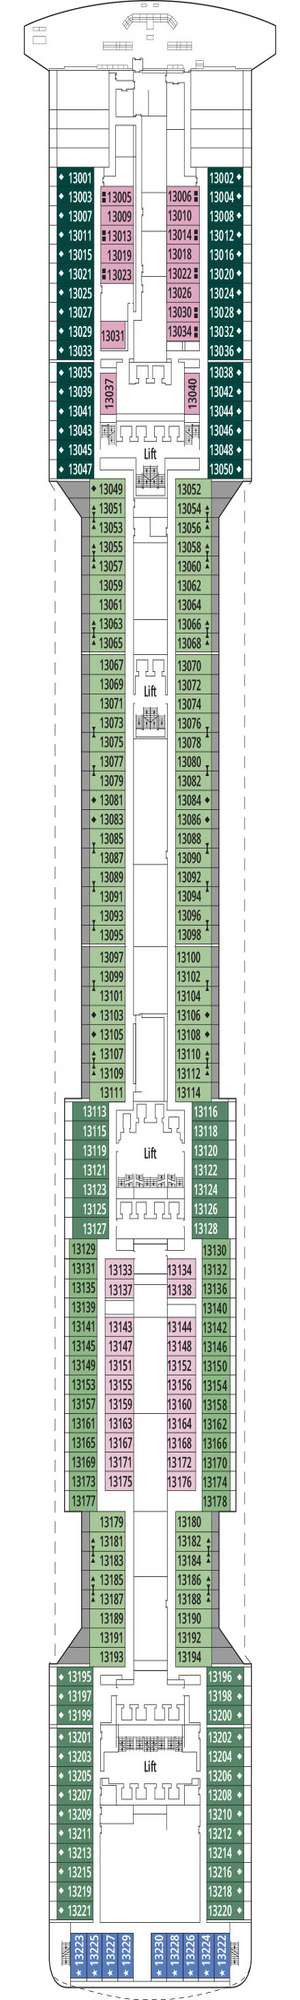 Deck plan for MSC Preziosa